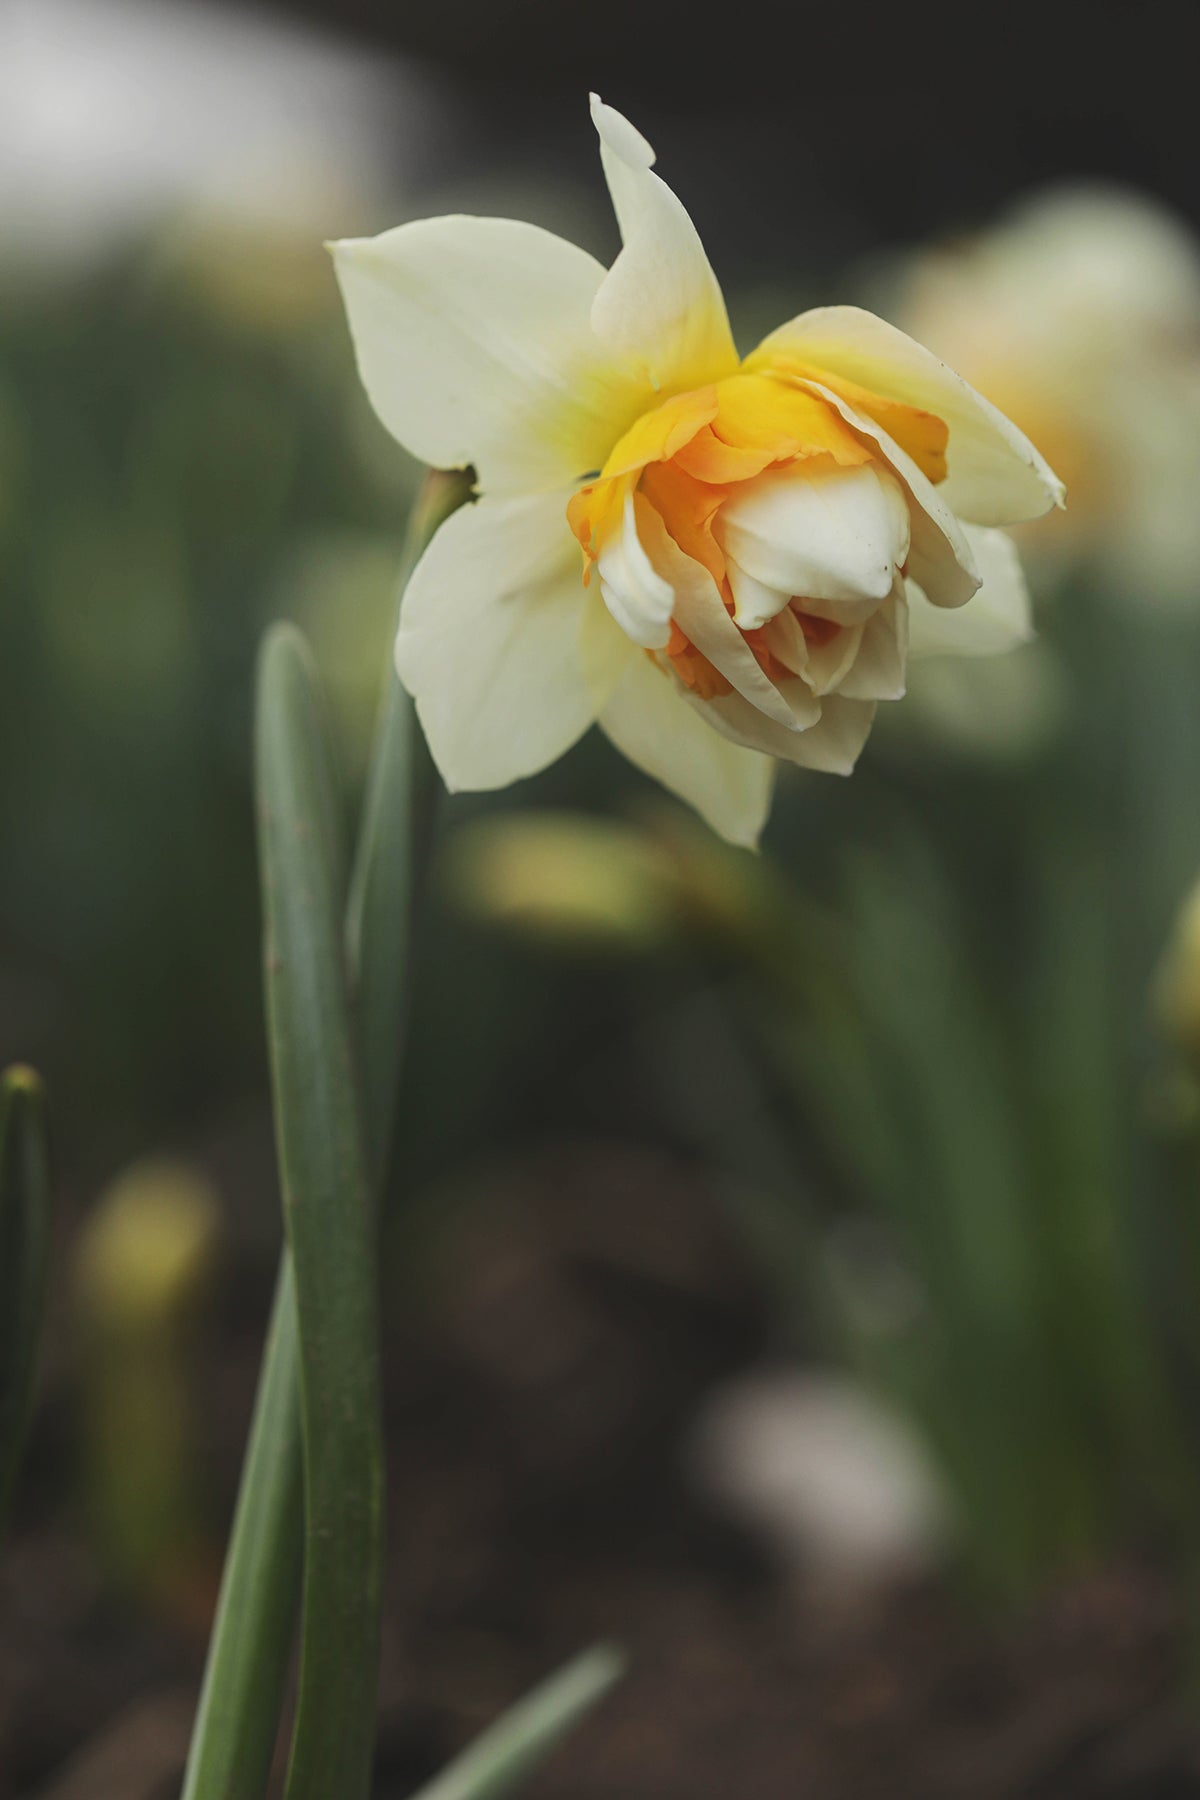 Narcissus Delnashaugh